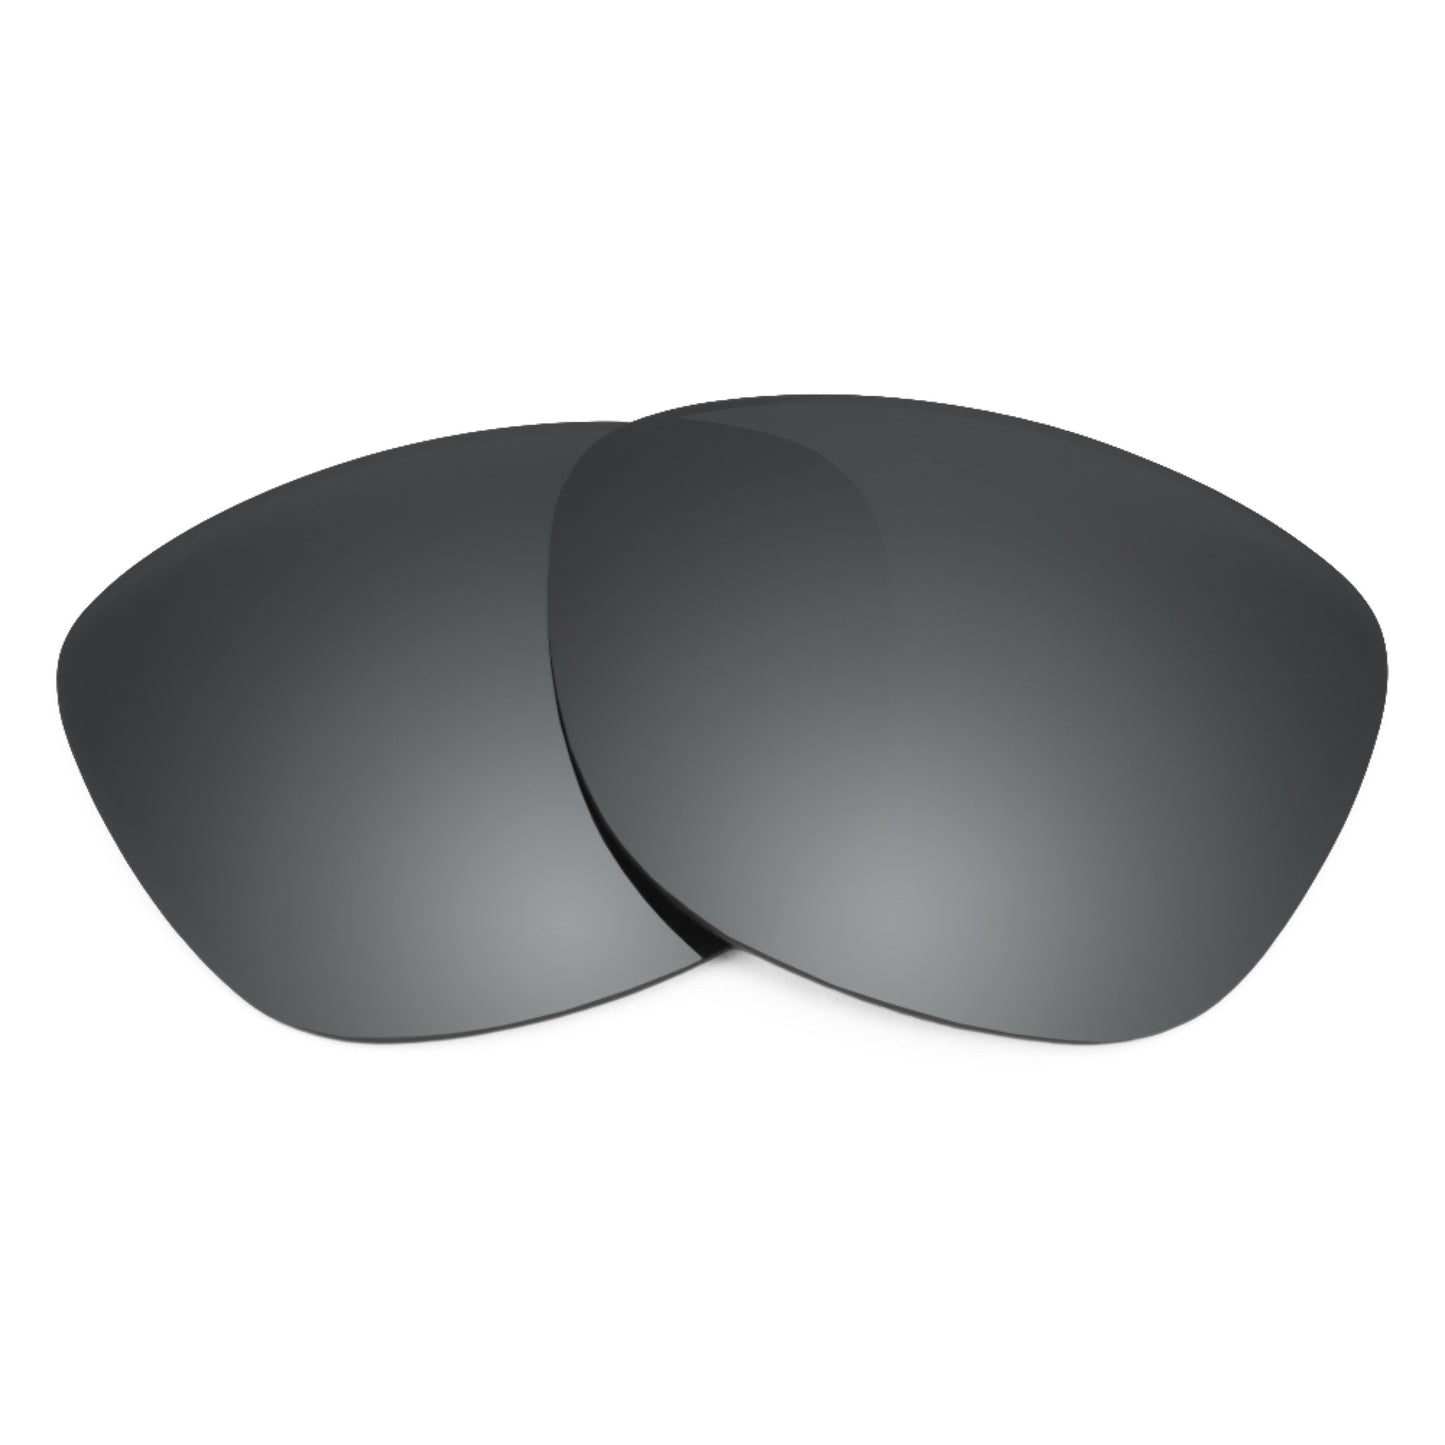 Revant replacement lenses for Ray-Ban Hexagonal RB3548N 54mm Elite Polarized Black Chrome